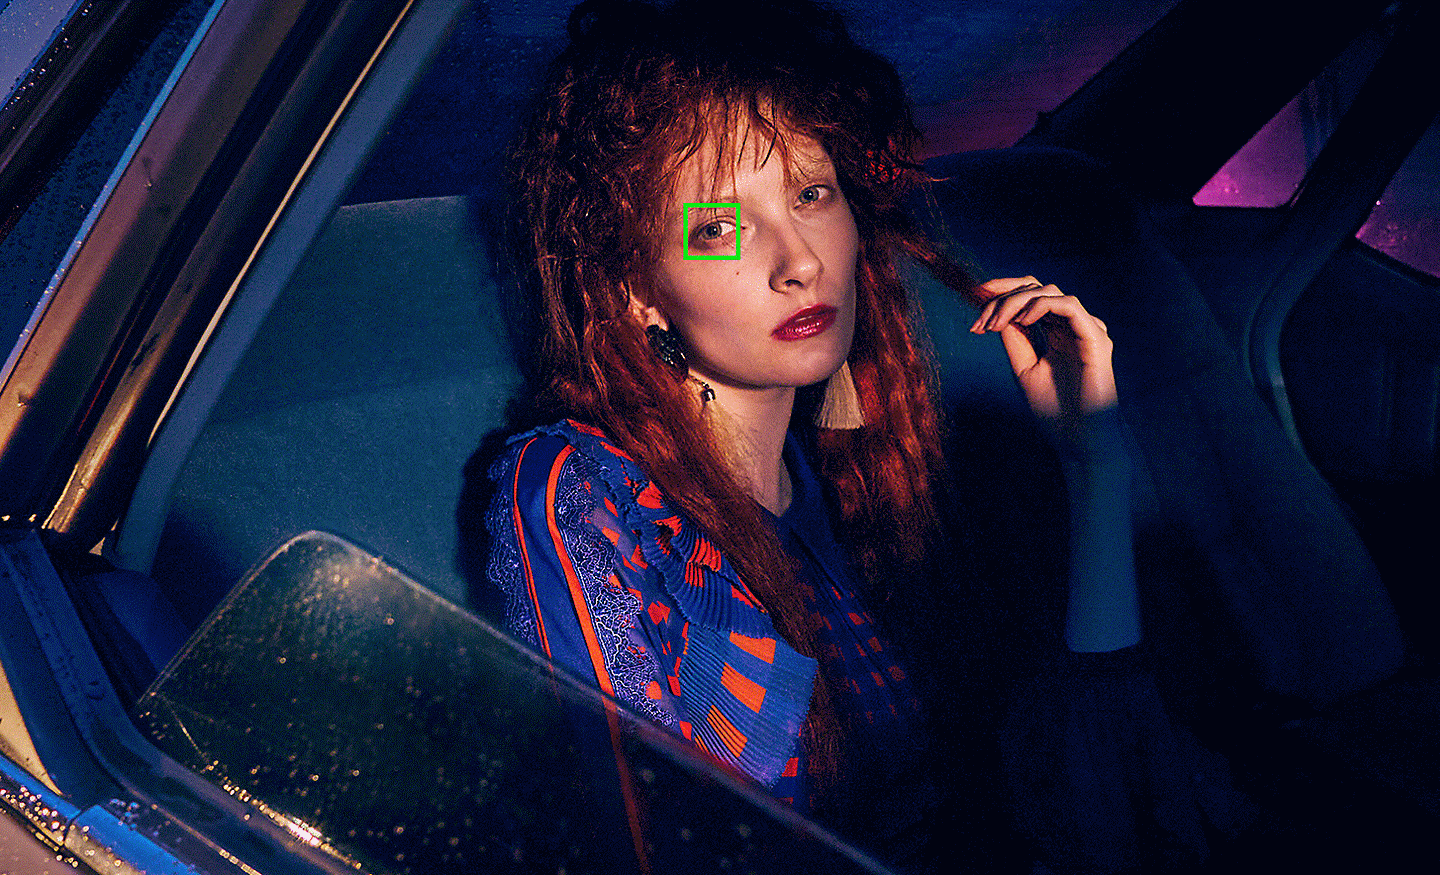 Hình ảnh trong điều kiện ánh sáng kém chụp người phụ nữ trong xe ô tô với điểm lấy nét tự động màu xanh lá trên mắt